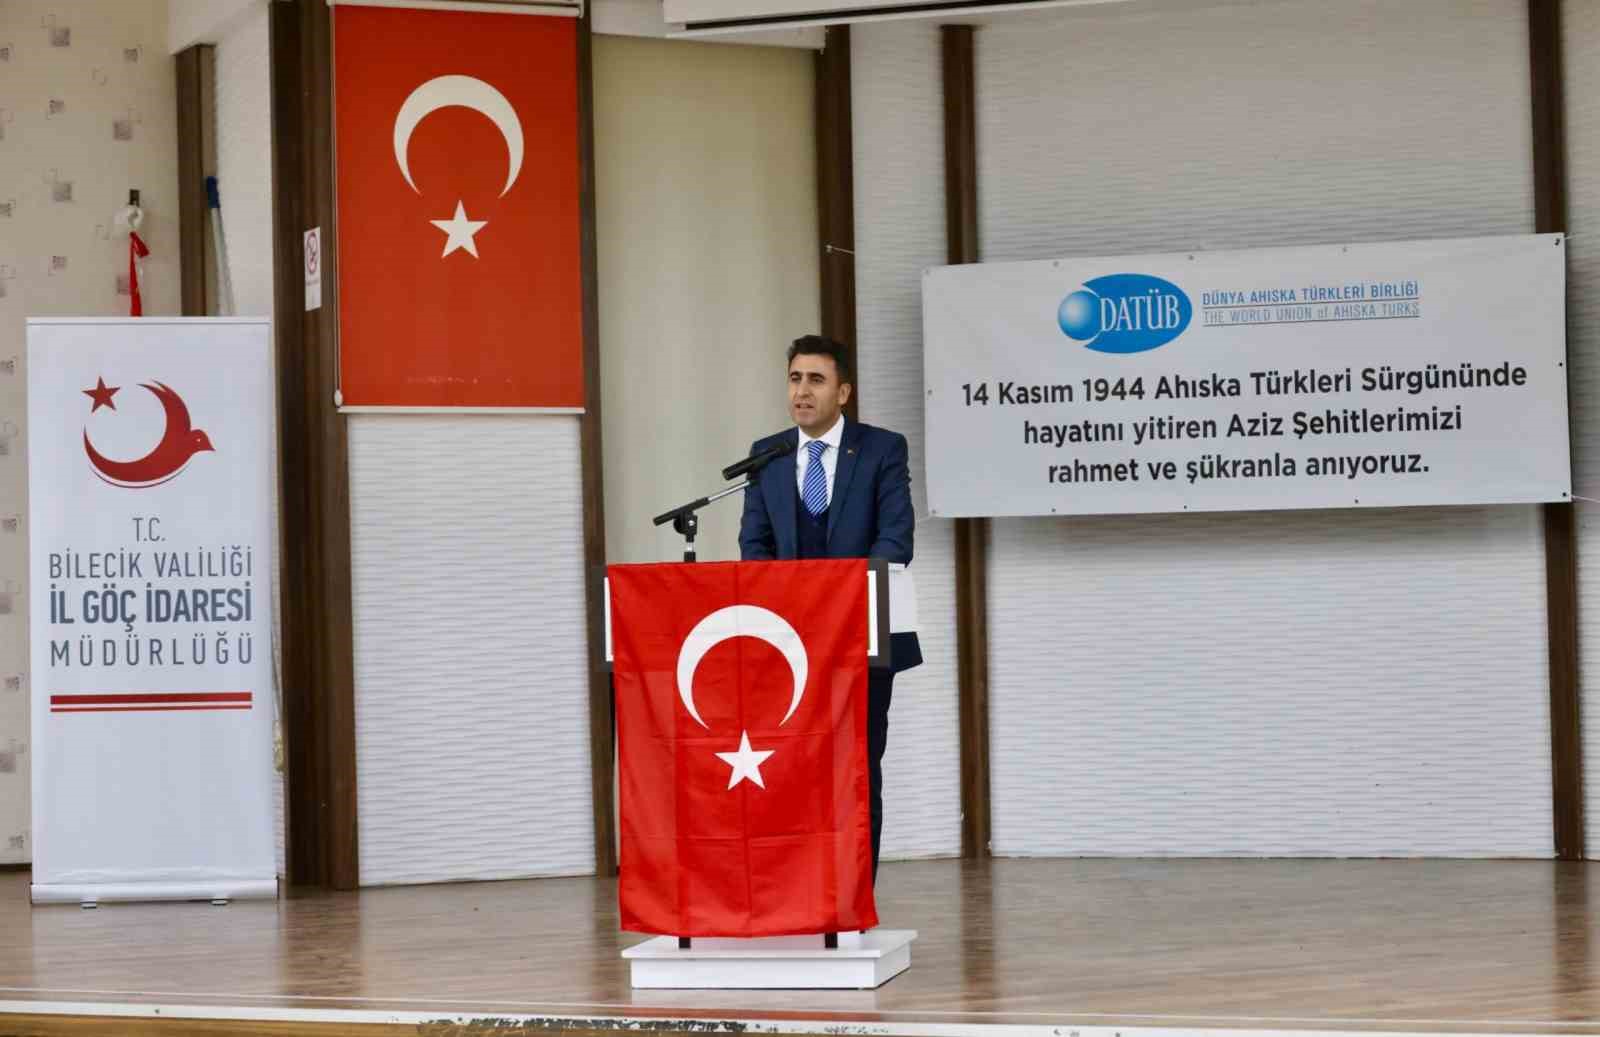 Ahıska Türkleri sürgününün 79’uncı yıldönümü anıldı